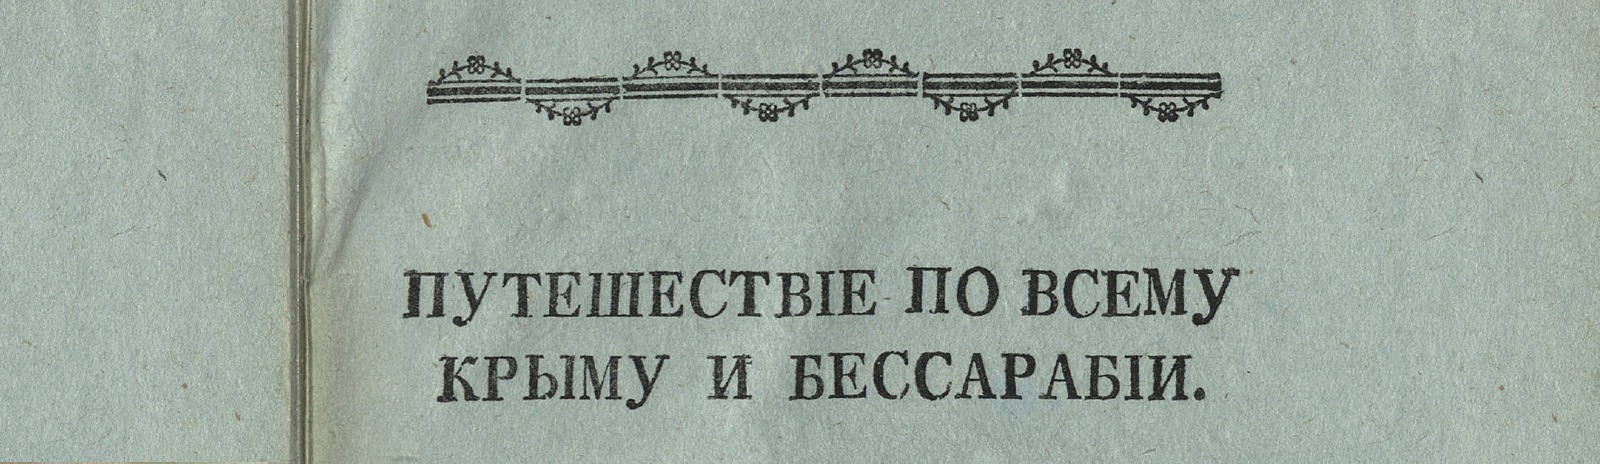 Фоновое изображение Путешествие по всему Крыму и Бессарабии в 1799 году